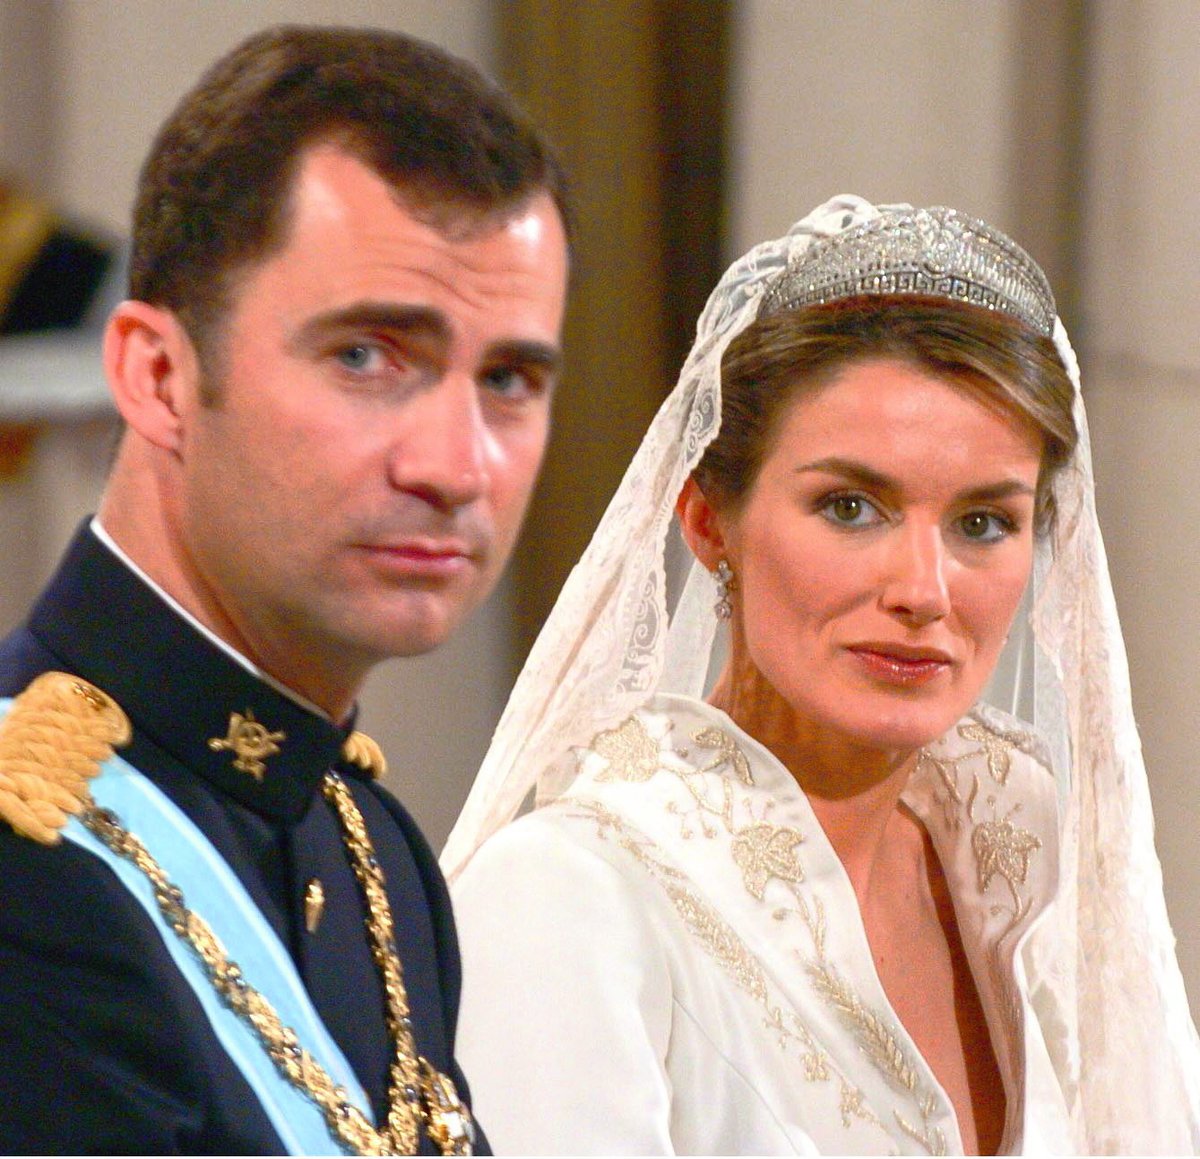 Se cumplen 20 años de la boda de Felipe VI y Letizia. Mintieron a todos los ciudadanos y dijeron que no harían luna de miel por respeto a las víctimas del 11-M. Acabaron escapándose en pleno luto en jet privado por islas paradisíacas y diferentes países. Se escondió en todas las